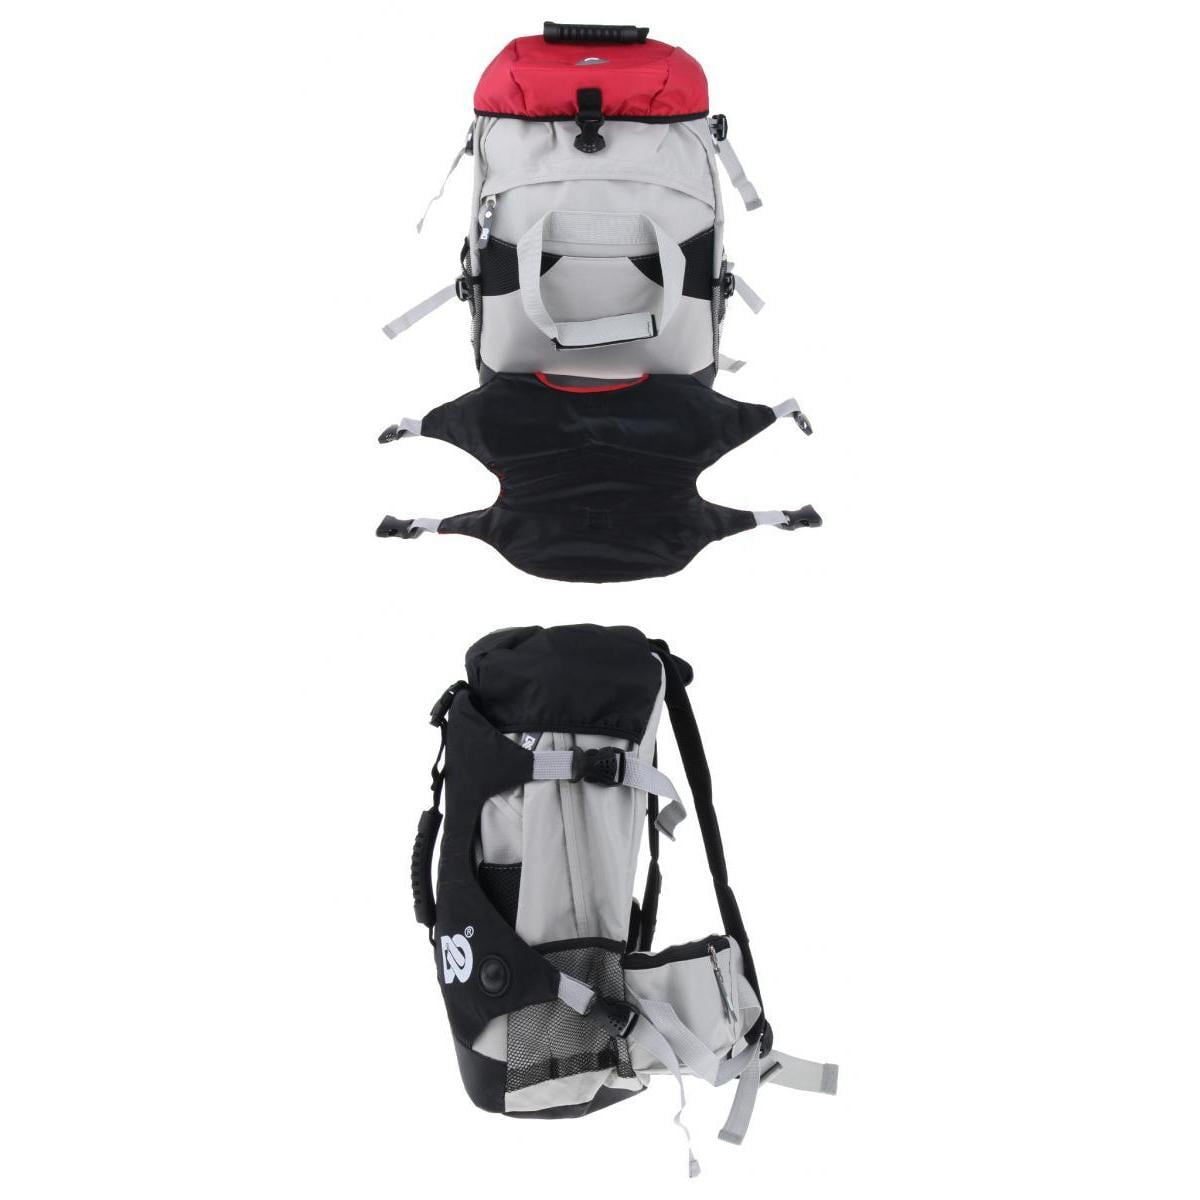 Details about   Skates Backpack Roller Inline Skating Shoes Holder Carrier Bag Multi Use 